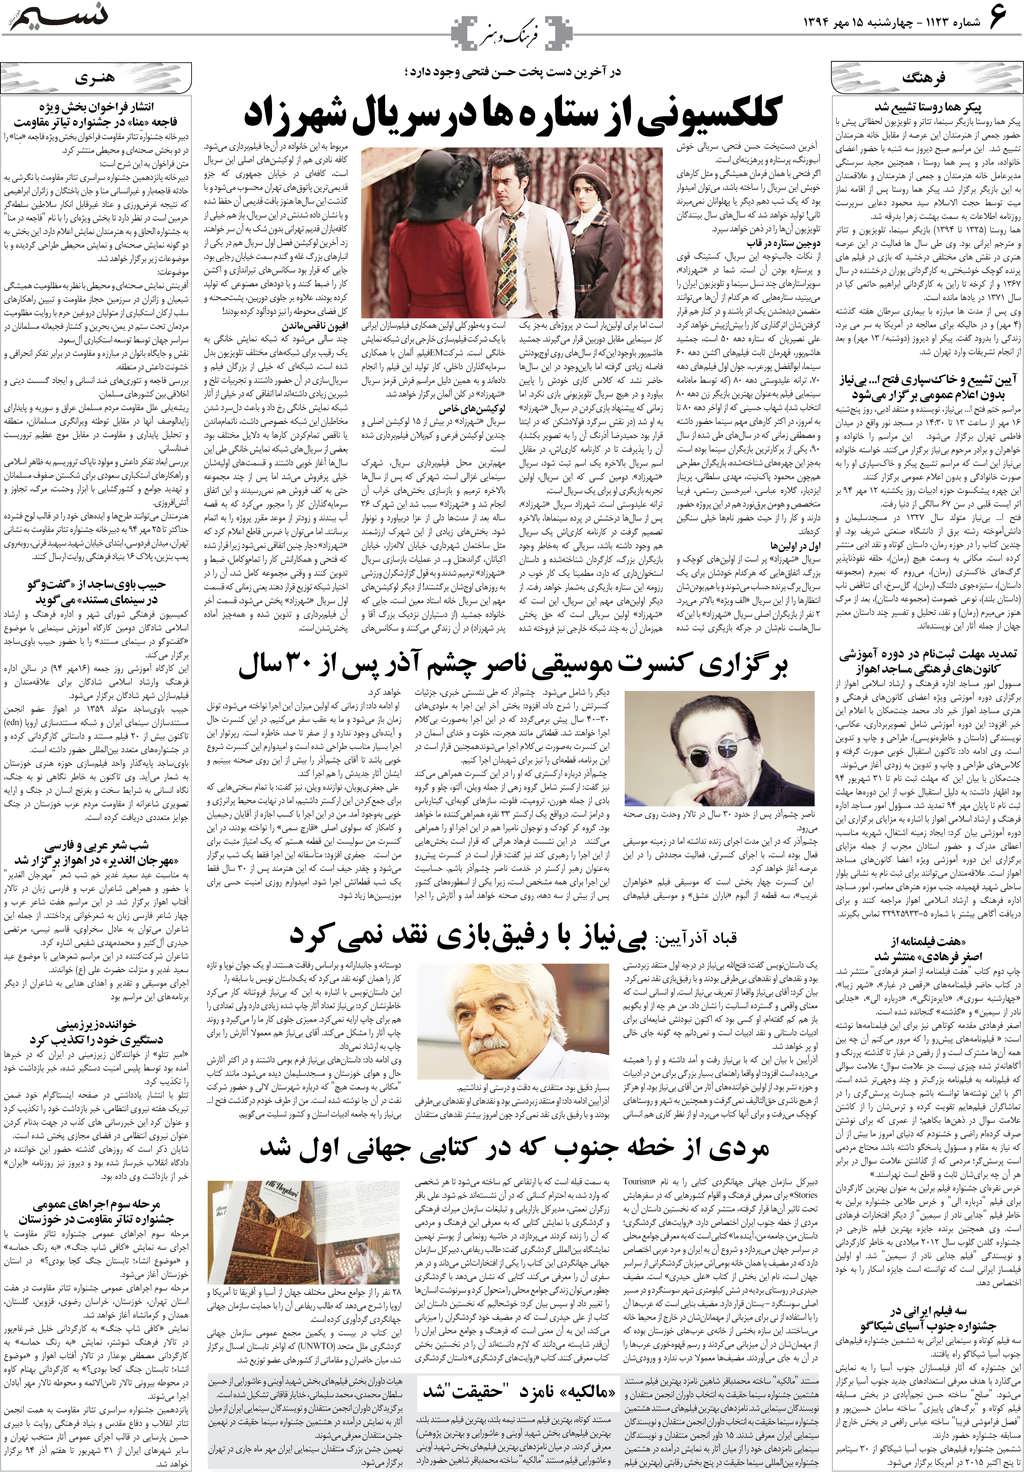 صفحه فرهنگ و هنر روزنامه نسیم شماره 1123